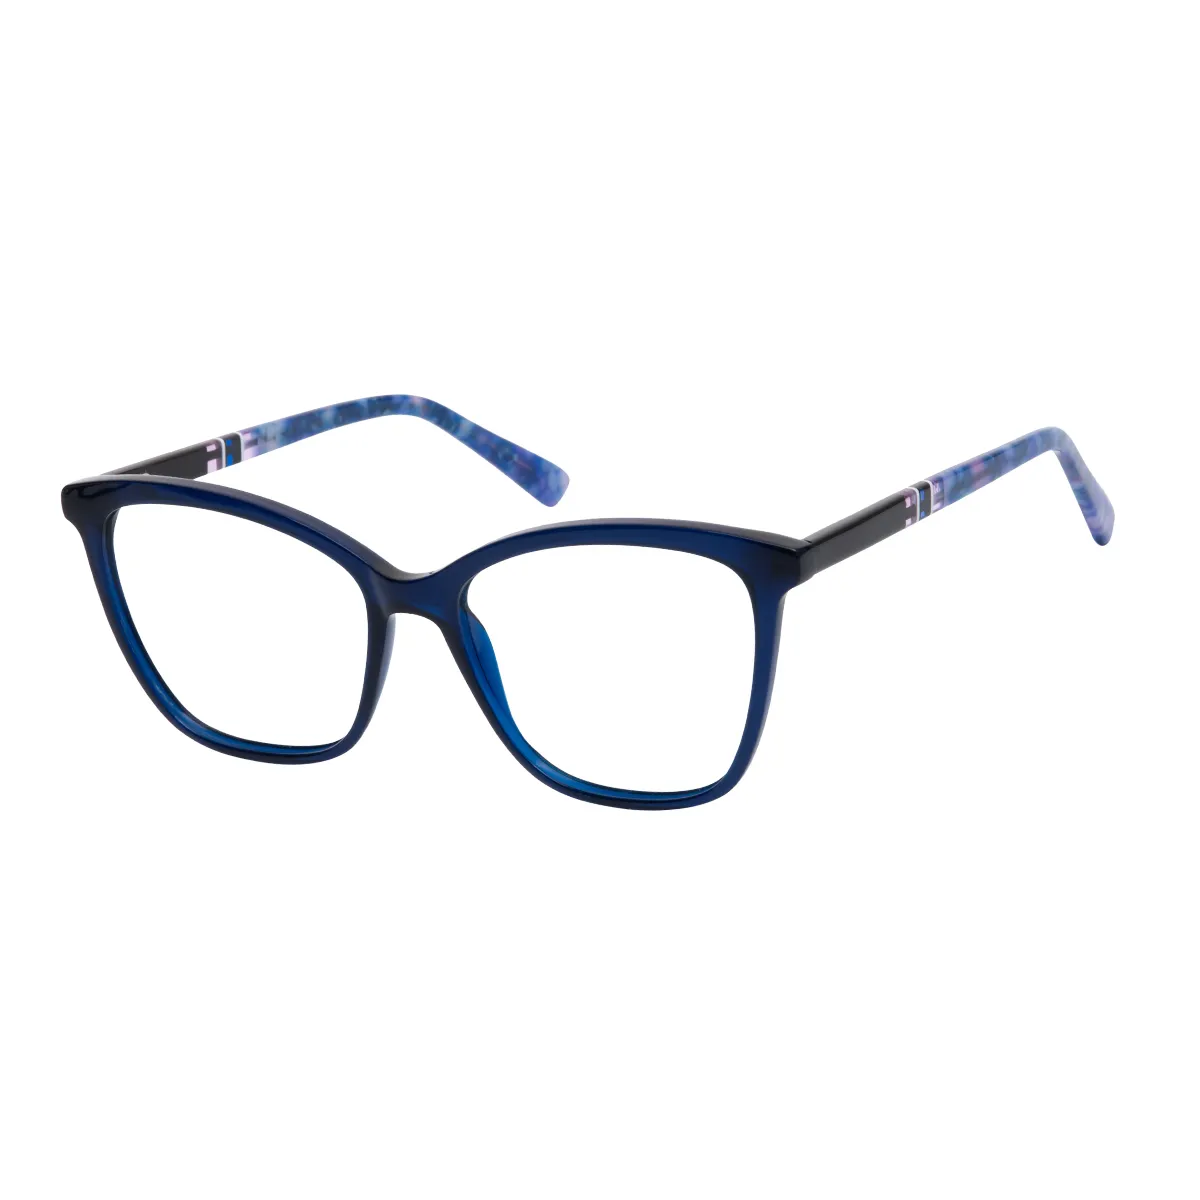 Everett - Square Blue Glasses for Women